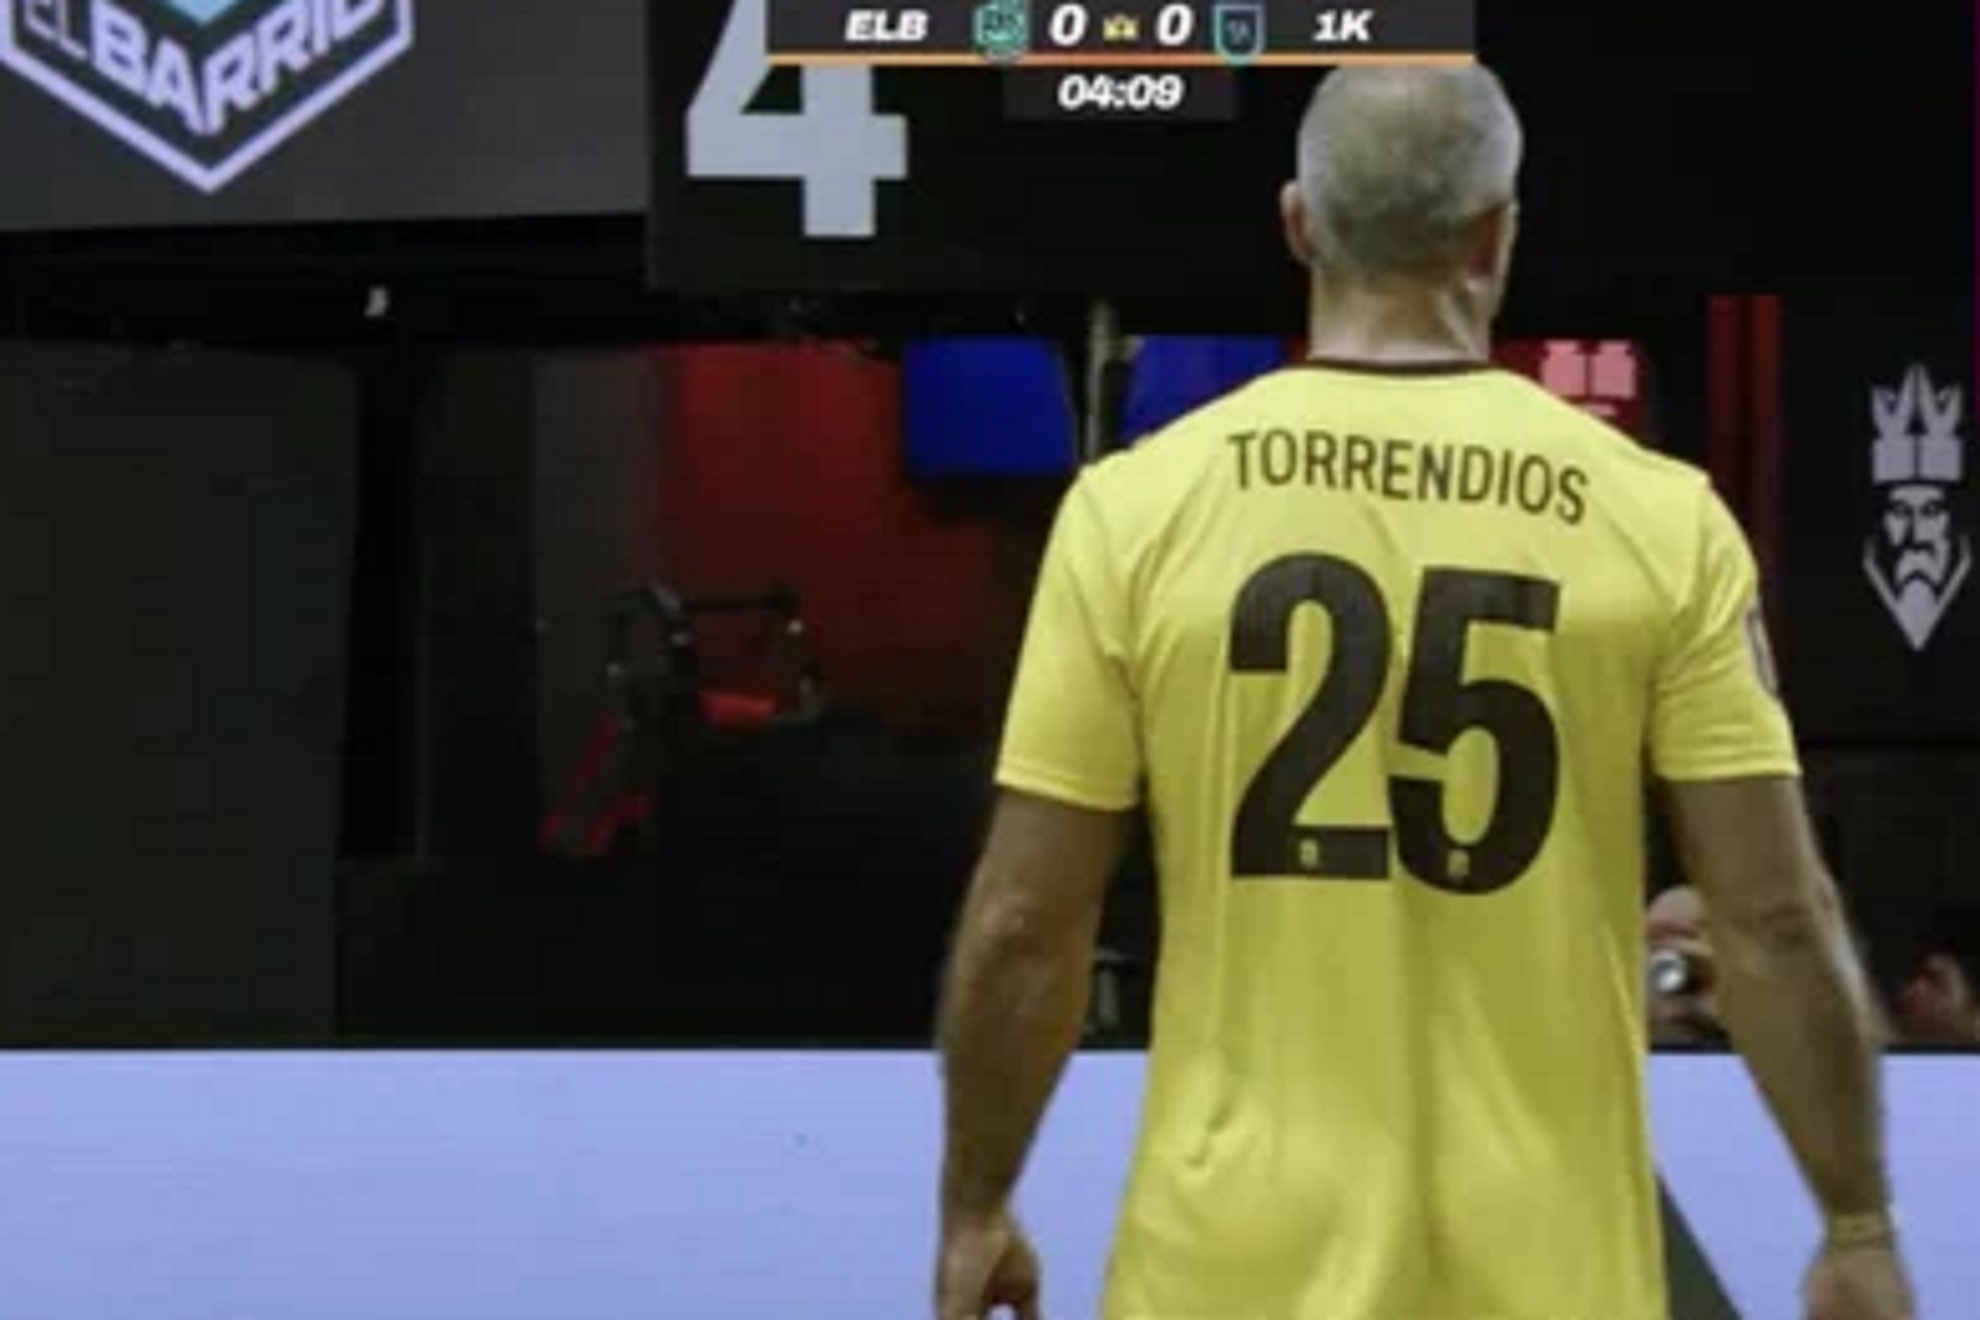 Marc Torrej�n se suma al meme y se cambia el nombre de la camiseta a Torrendios